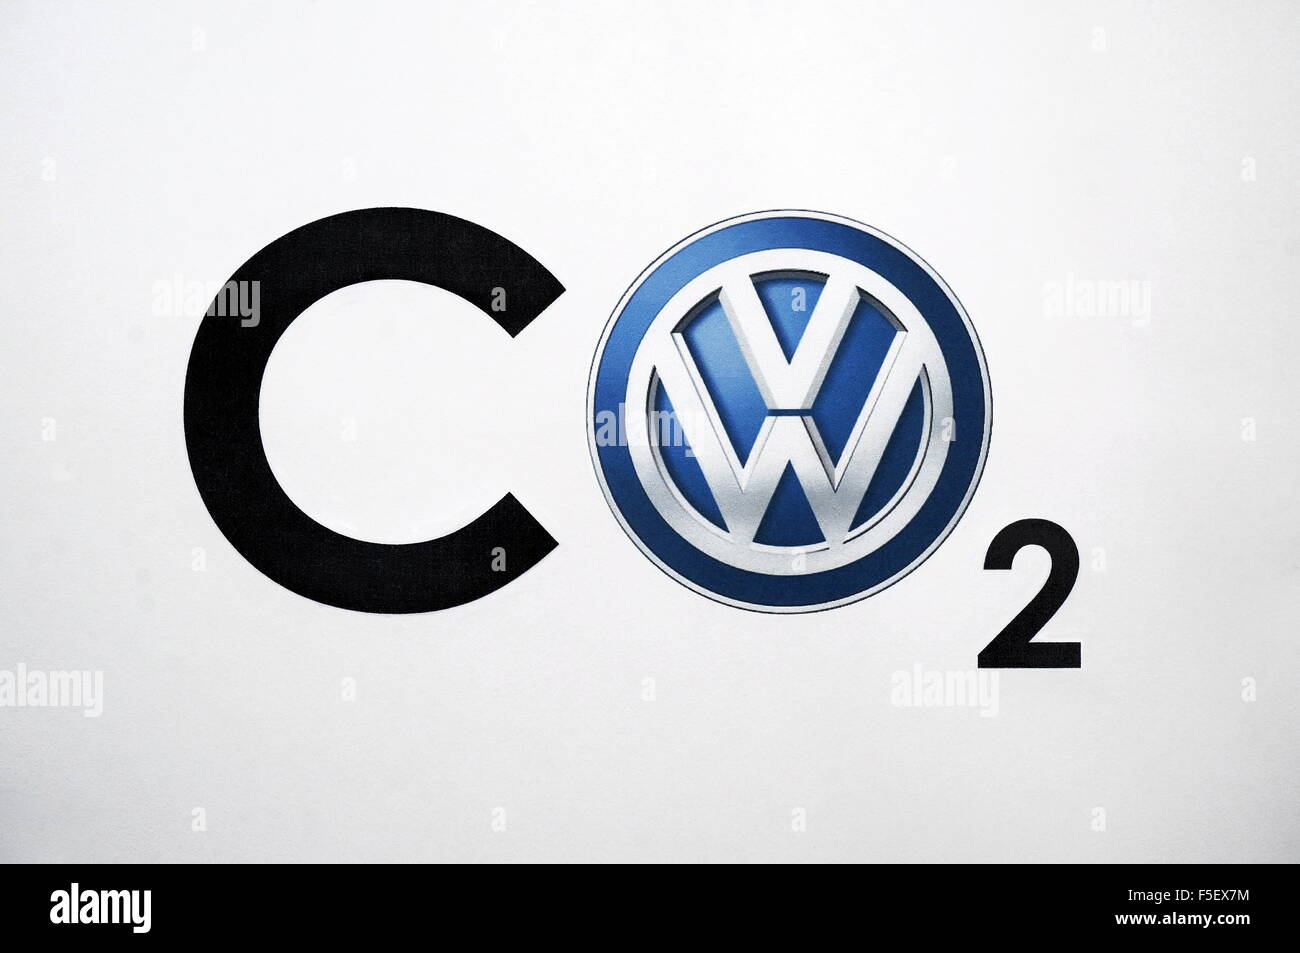 ILLUSTRATION - das VW-Logo ersetzt den Buchstaben O in der gesamten Formel "CO2" für Kohlendioxid. Das Foto wurde am 28. September 2015. Foto: S. Steinach - kein Draht-Dienst- Stockfoto